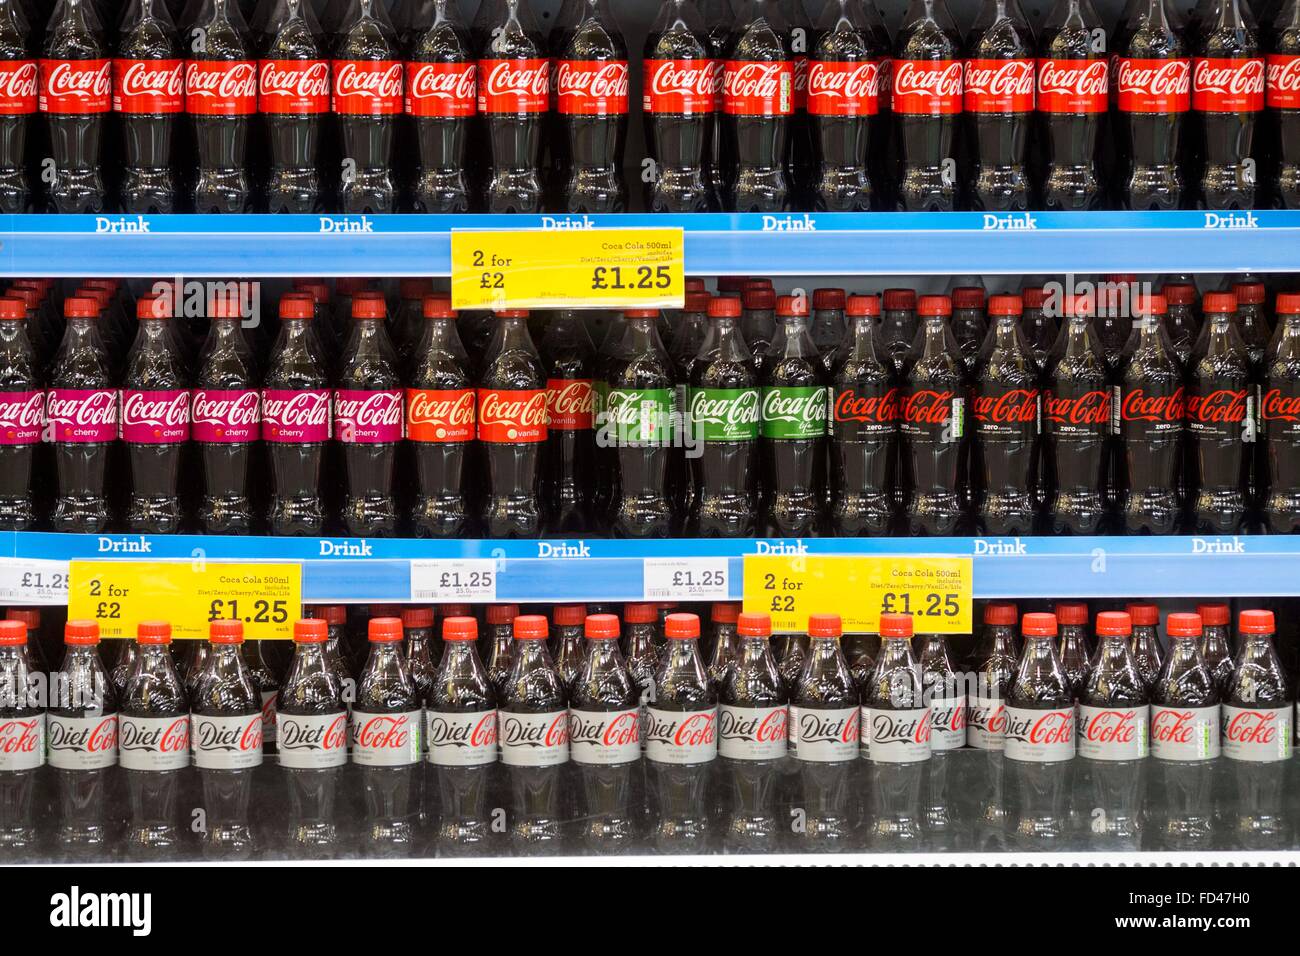 Flaschen Von Coca Cola In Einem Englischen Supermarkt Stockfotografie Alamy